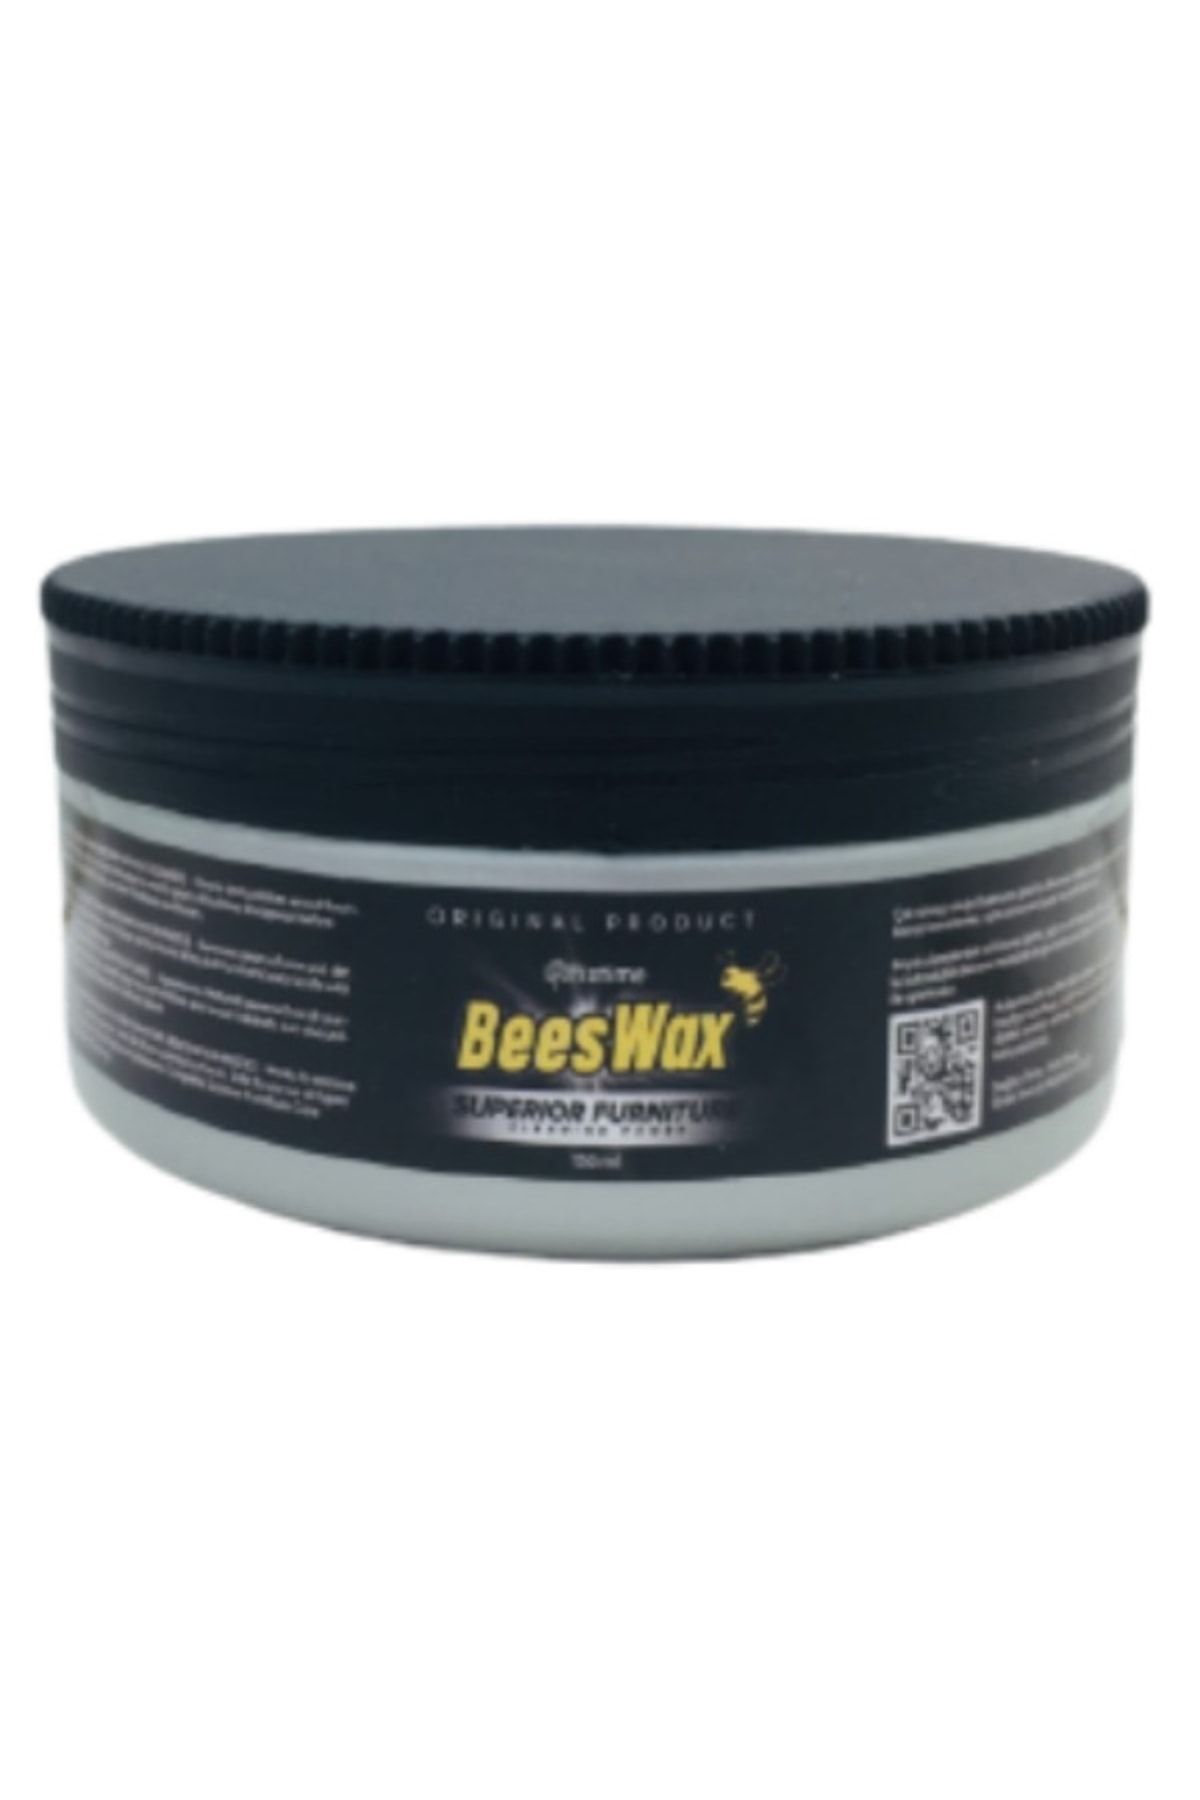 BeeWax Beeswax Tekli Ahşap Onarıcı Parlatıcı Koruyucu Balmumu 150 ml